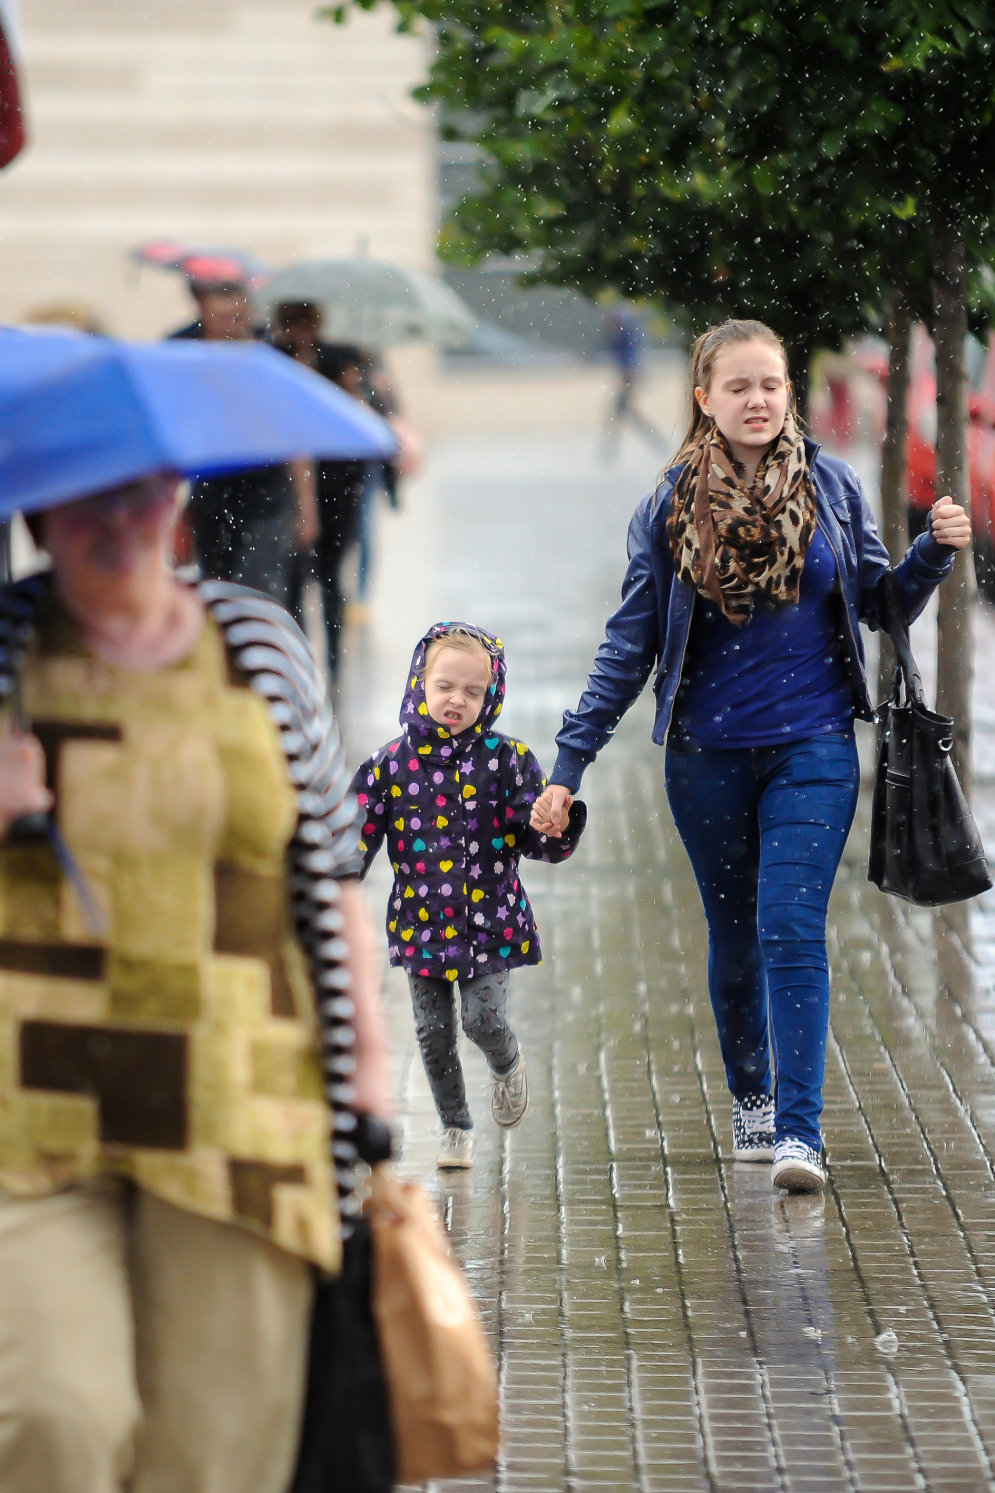 Непогода наконец-то покидает Латвию, а это лучшие фотографии рижан под дождем